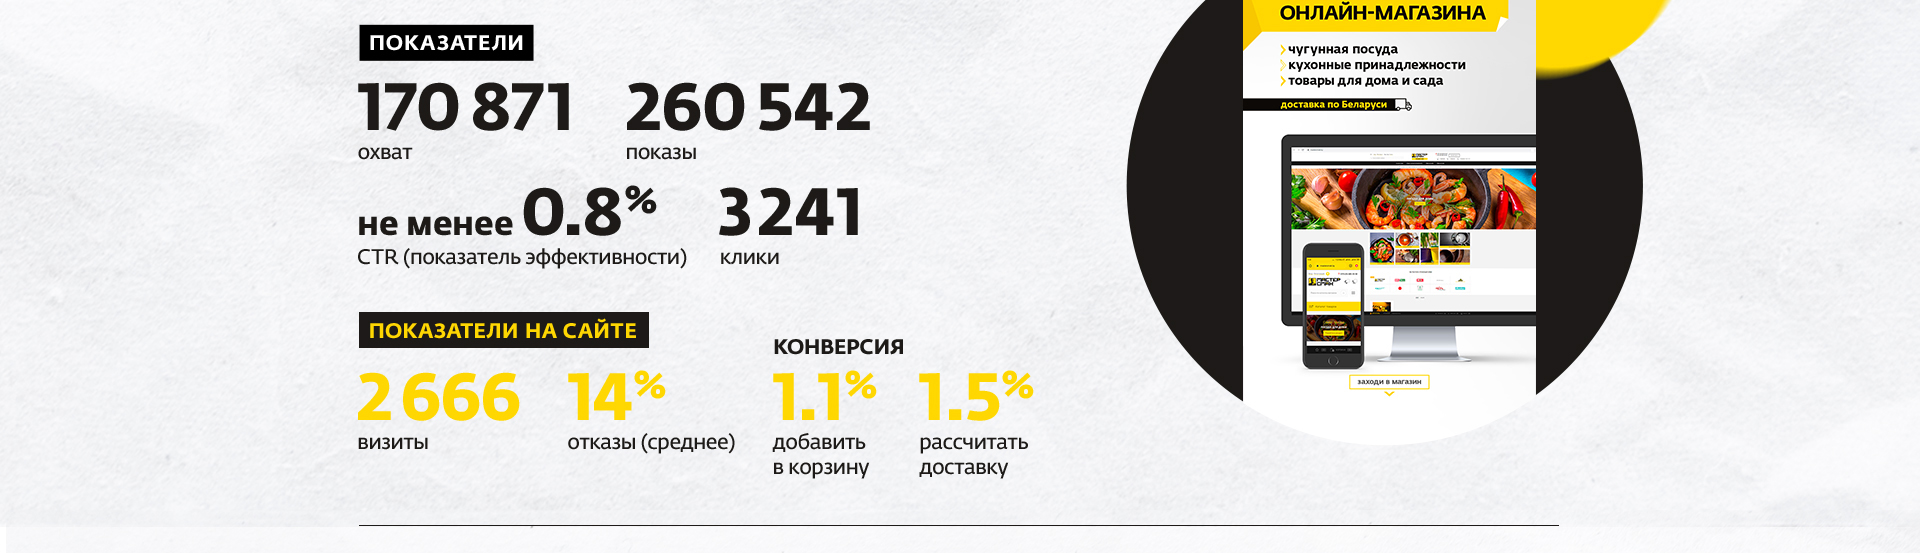 Digital-продвижение белорусского бренда чугунной посуды «Мастер Смак»